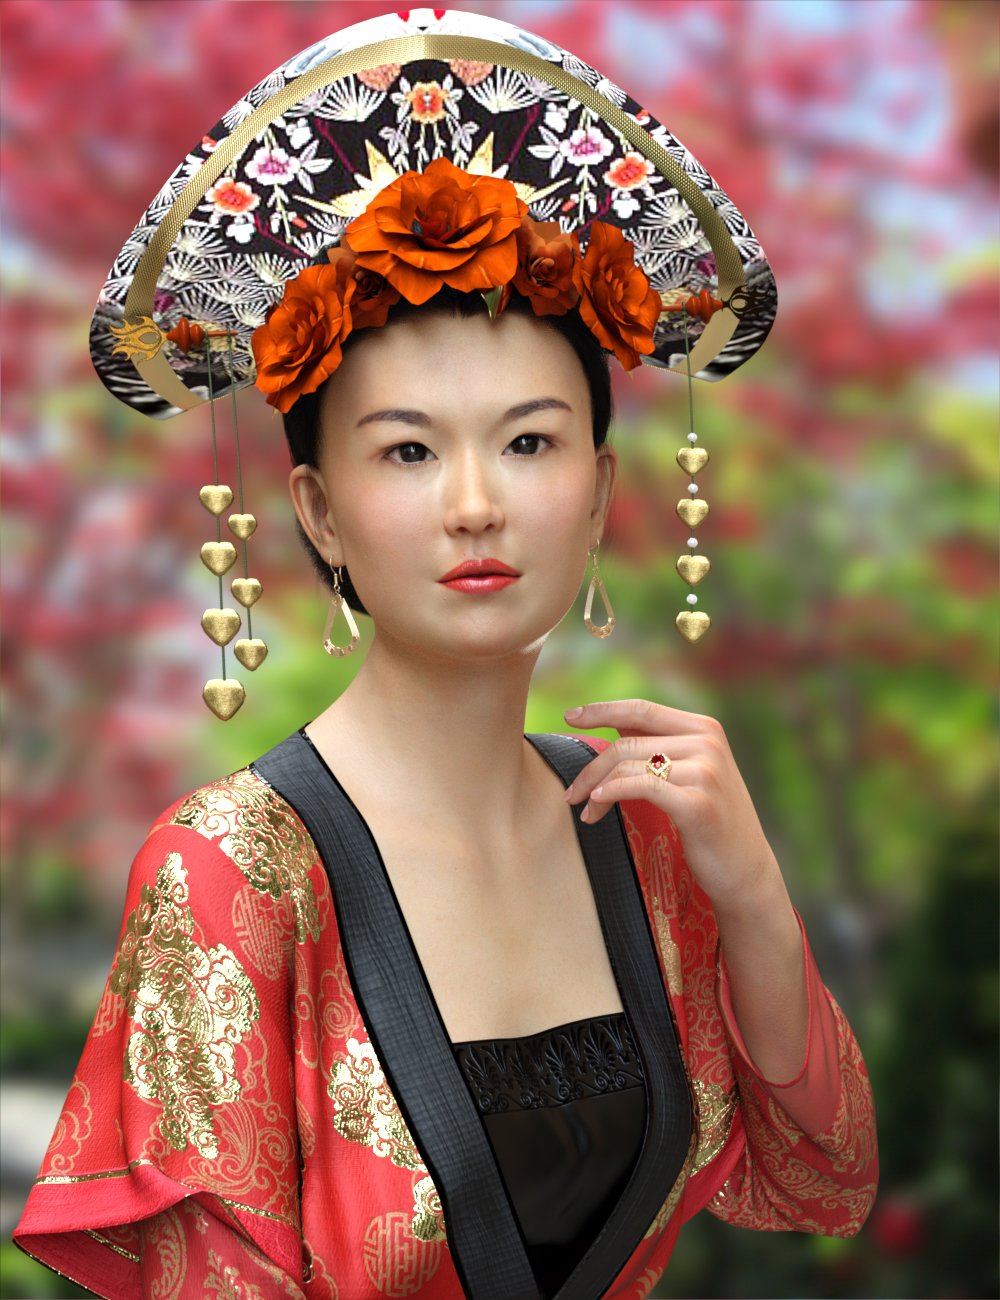 East Asian Women for Mei Lin 8 by: Virtual_World, 3D Models by Daz 3D